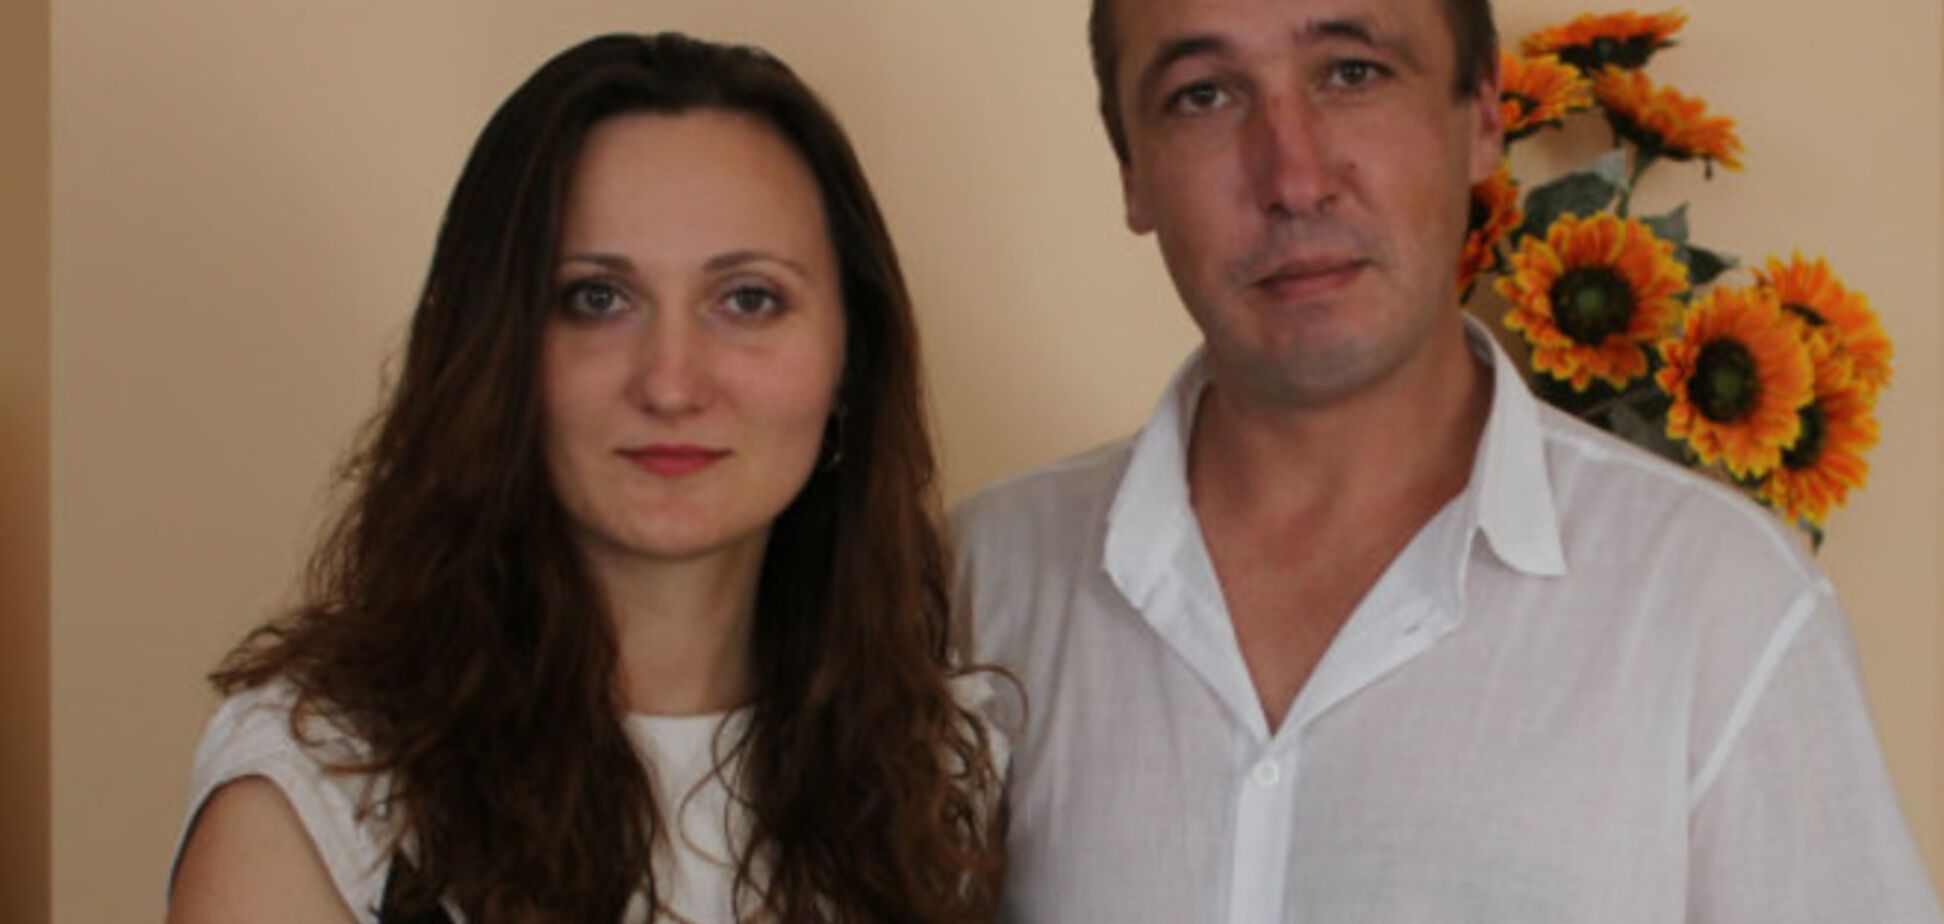 Жена украинского капитана сдалась в плен 'Бесу' ради спасения мужа